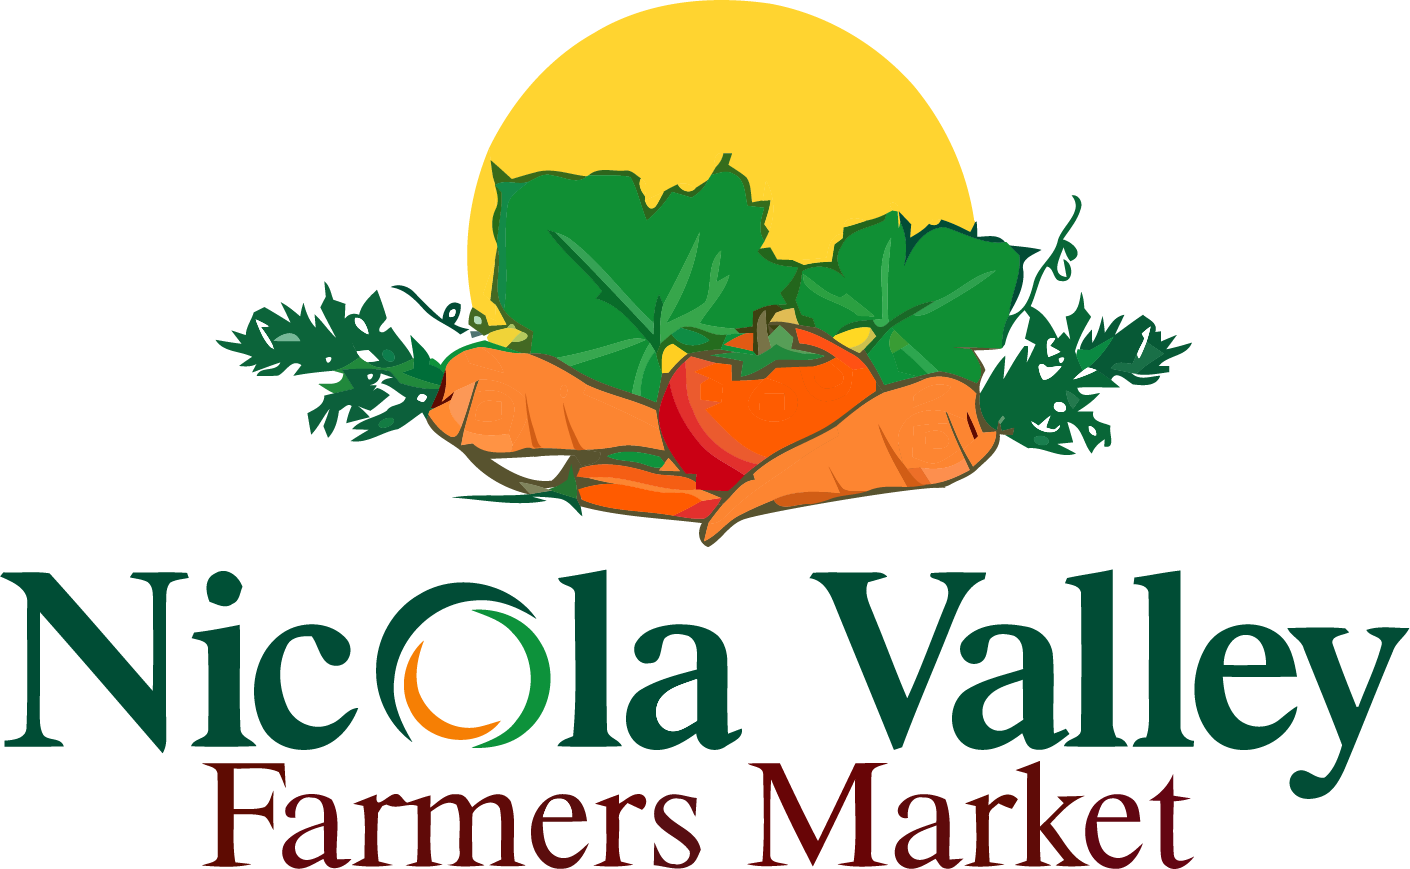 Nicola Valley Farmers Market